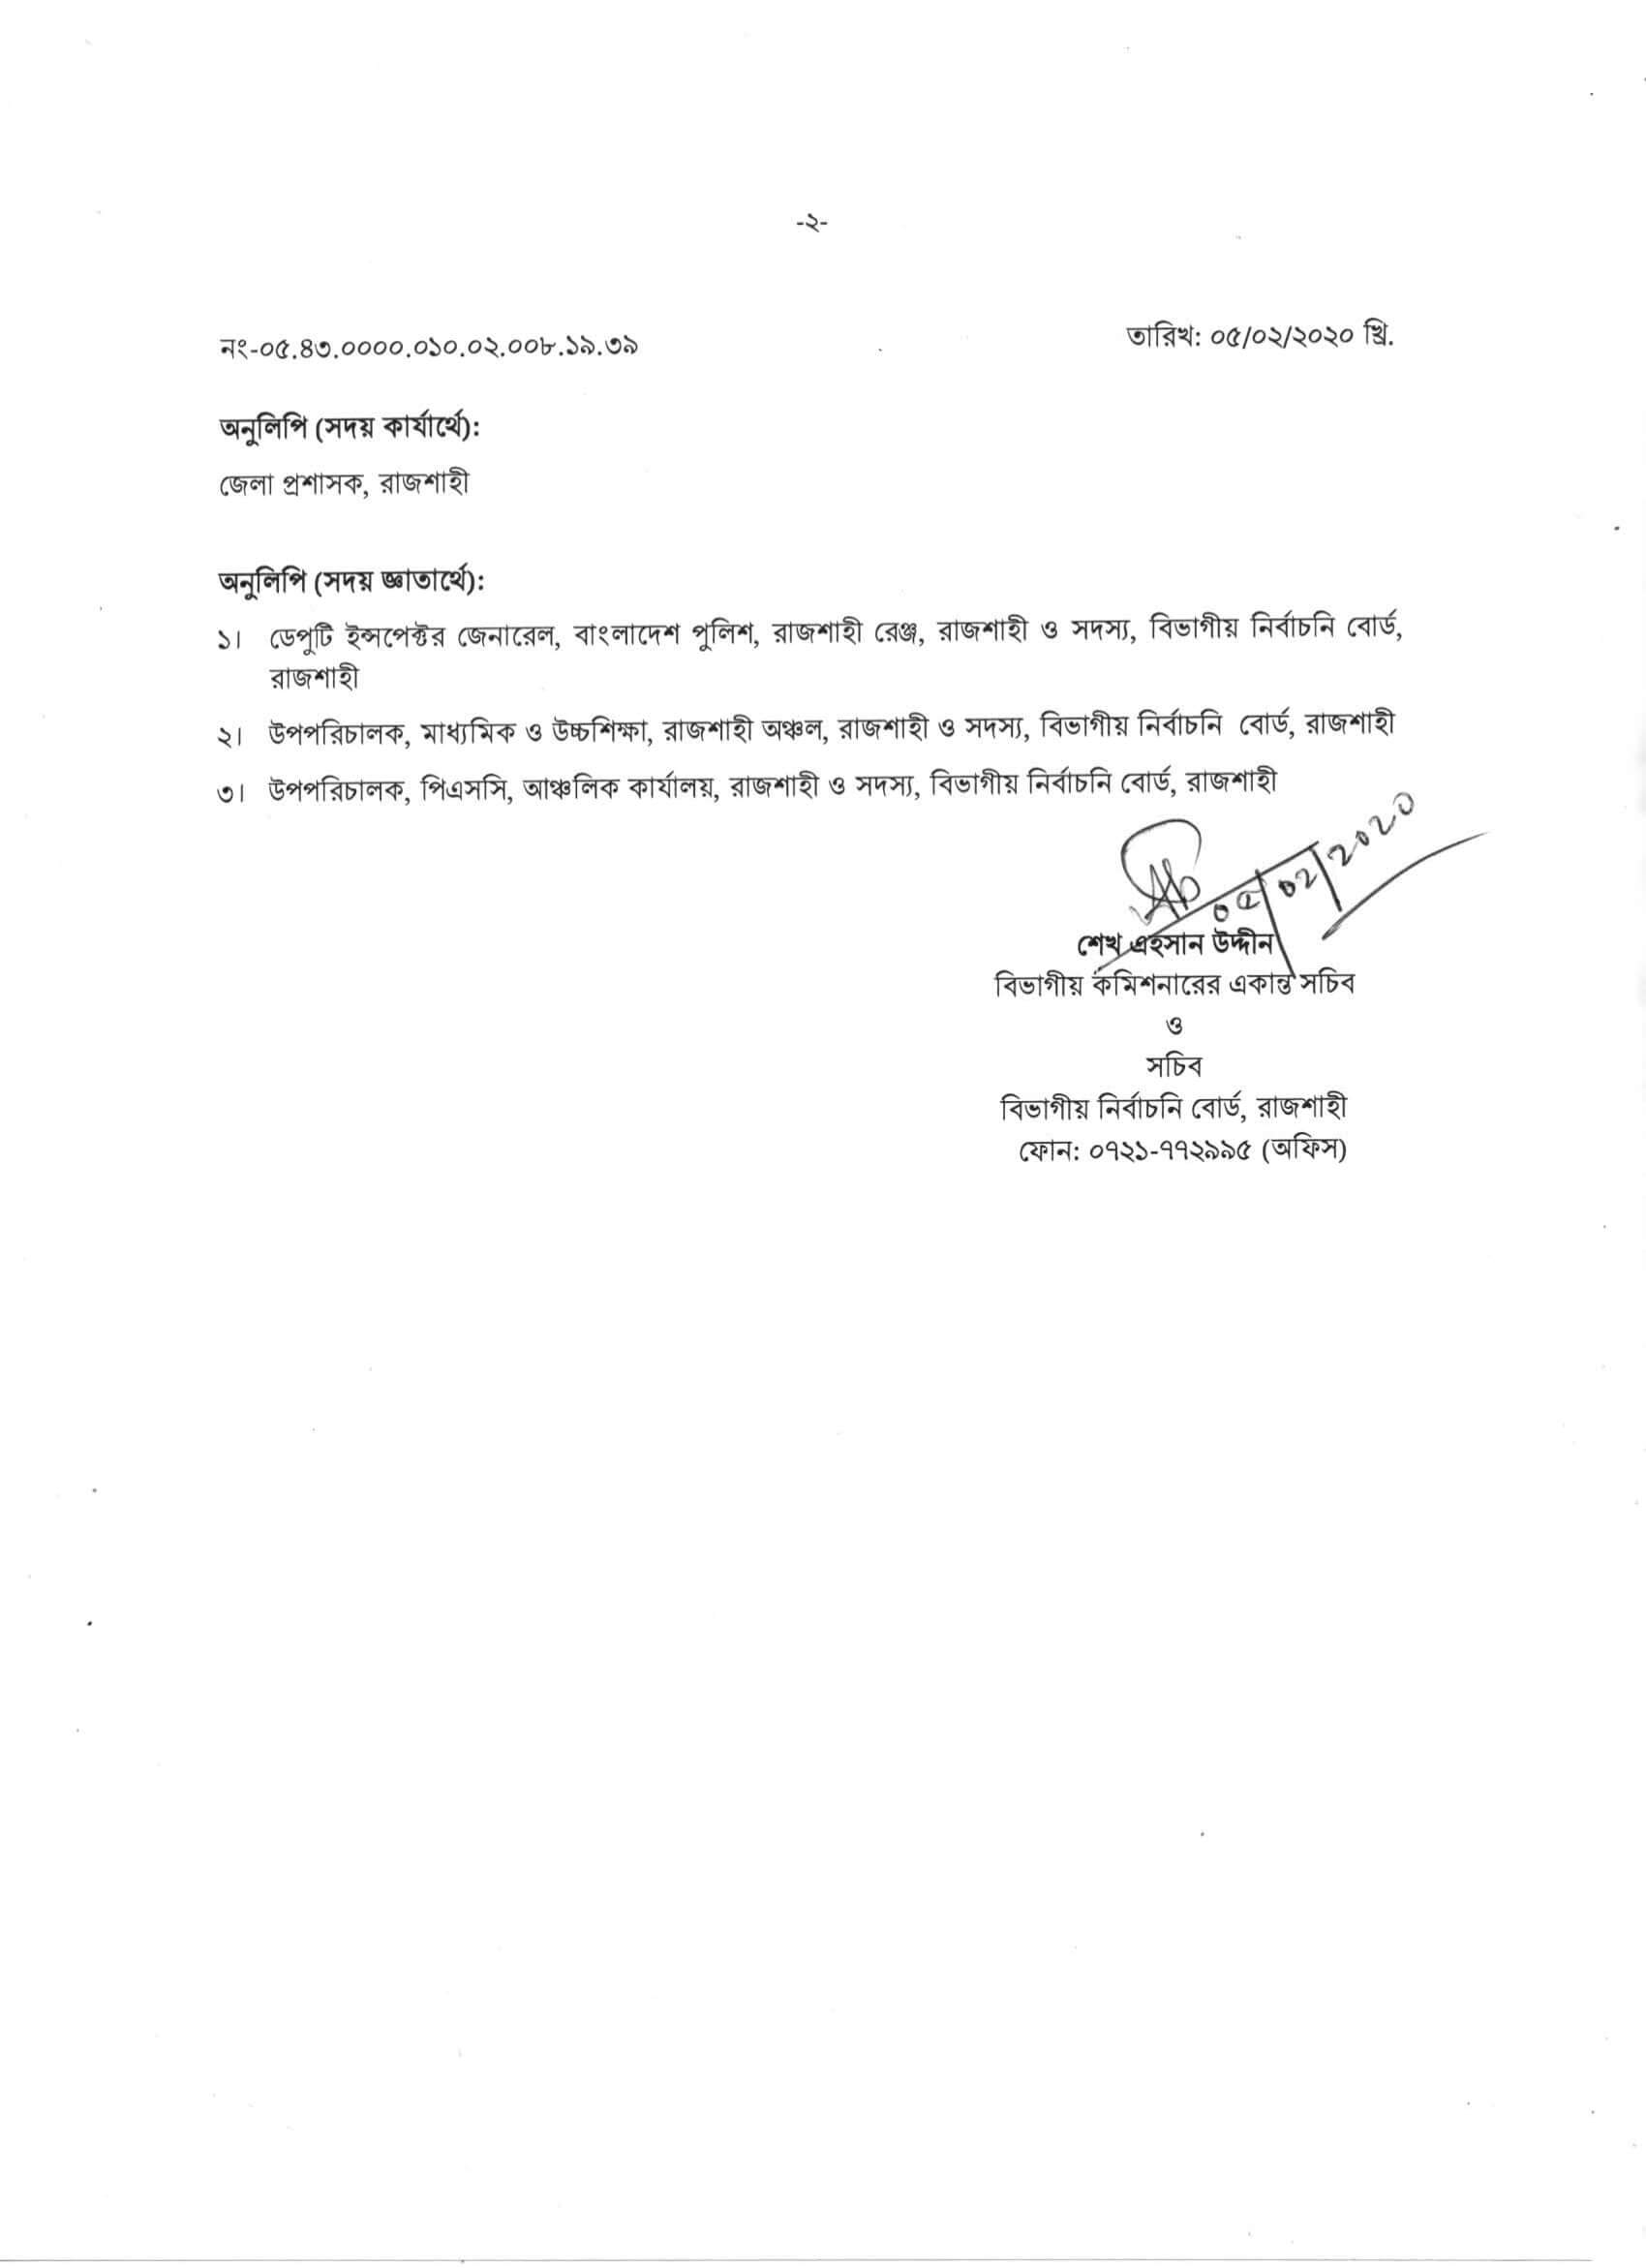 Rajshahi DC Office Job Result 2020